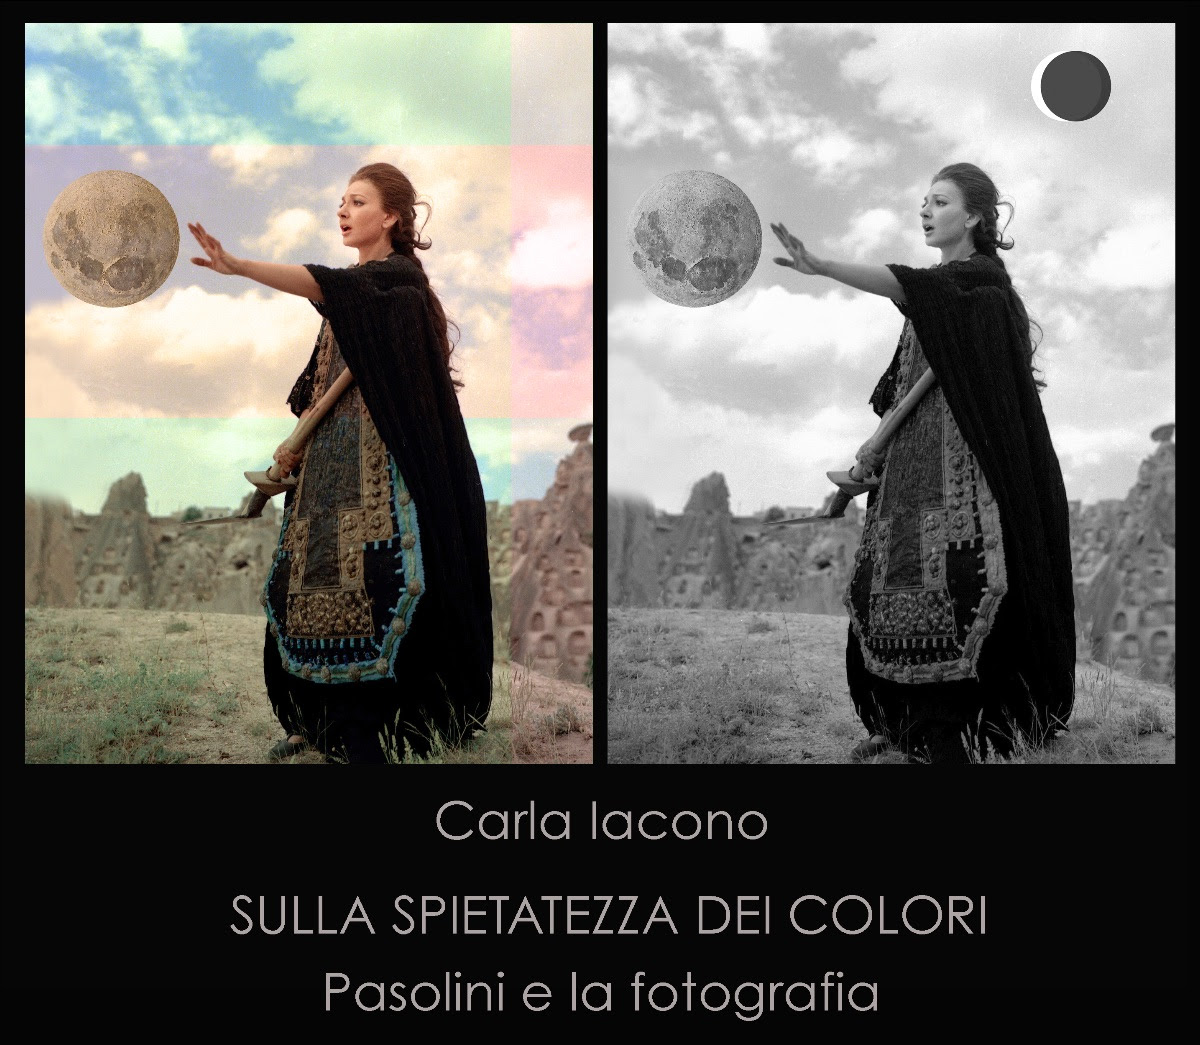 Carla Iacono - Sulla spietatezza dei colori